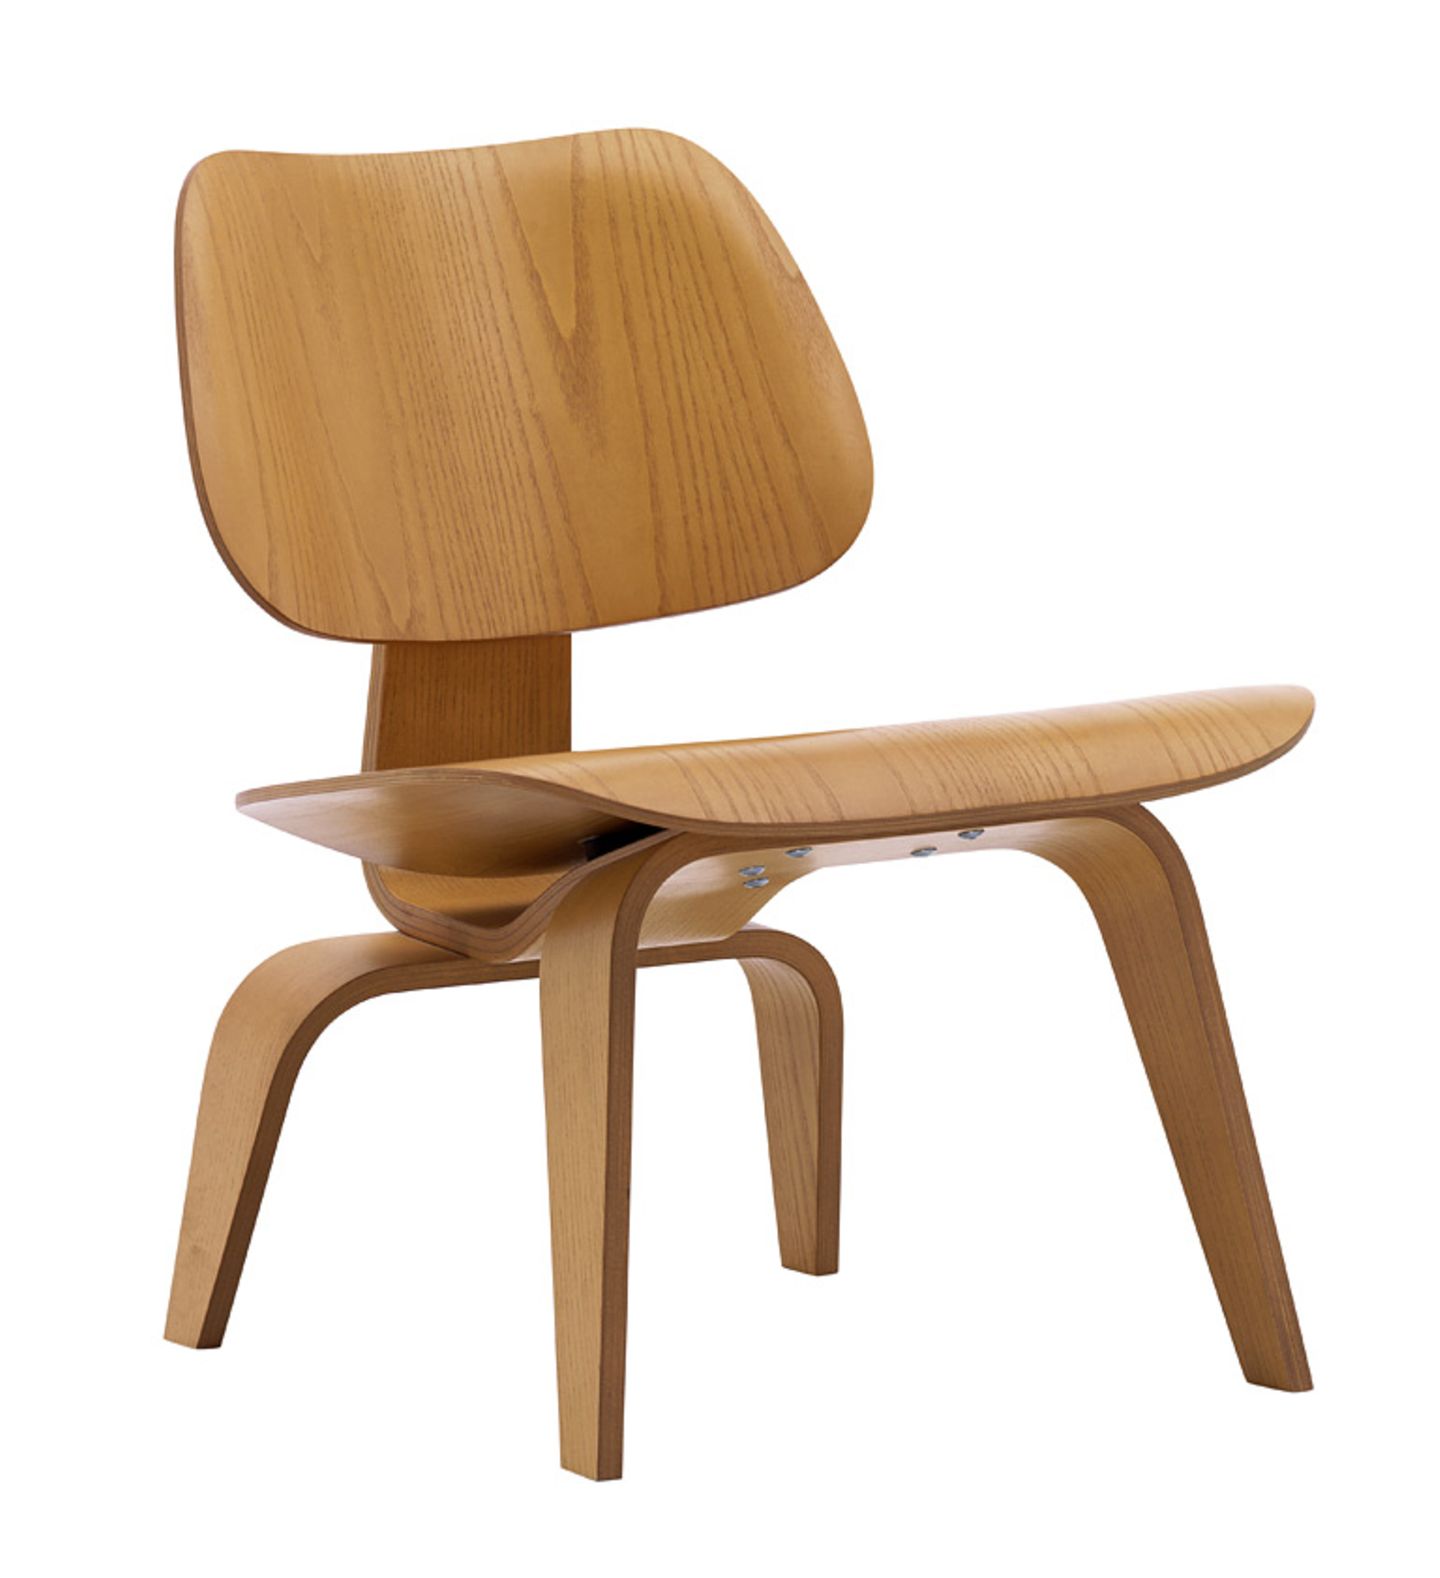 Sessel "LCW" von Ray und Charles Eames